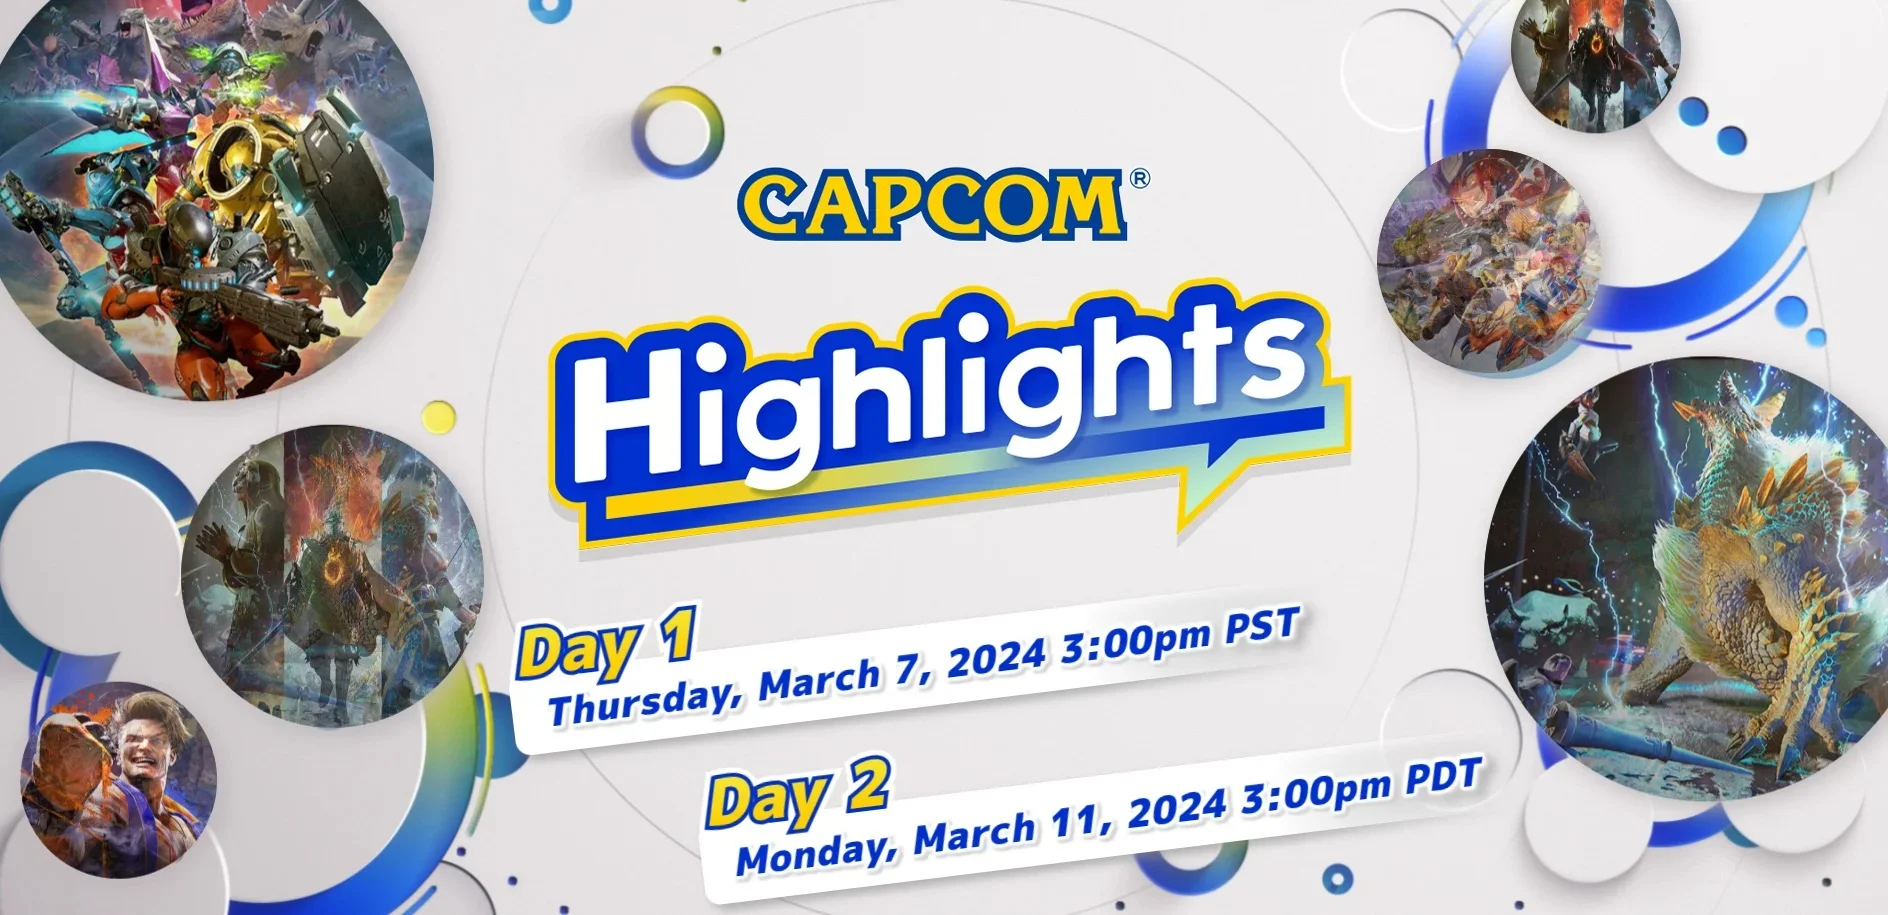 Capcom проведёт большую презентацию своих игр 8 и 12 марта - фото 1